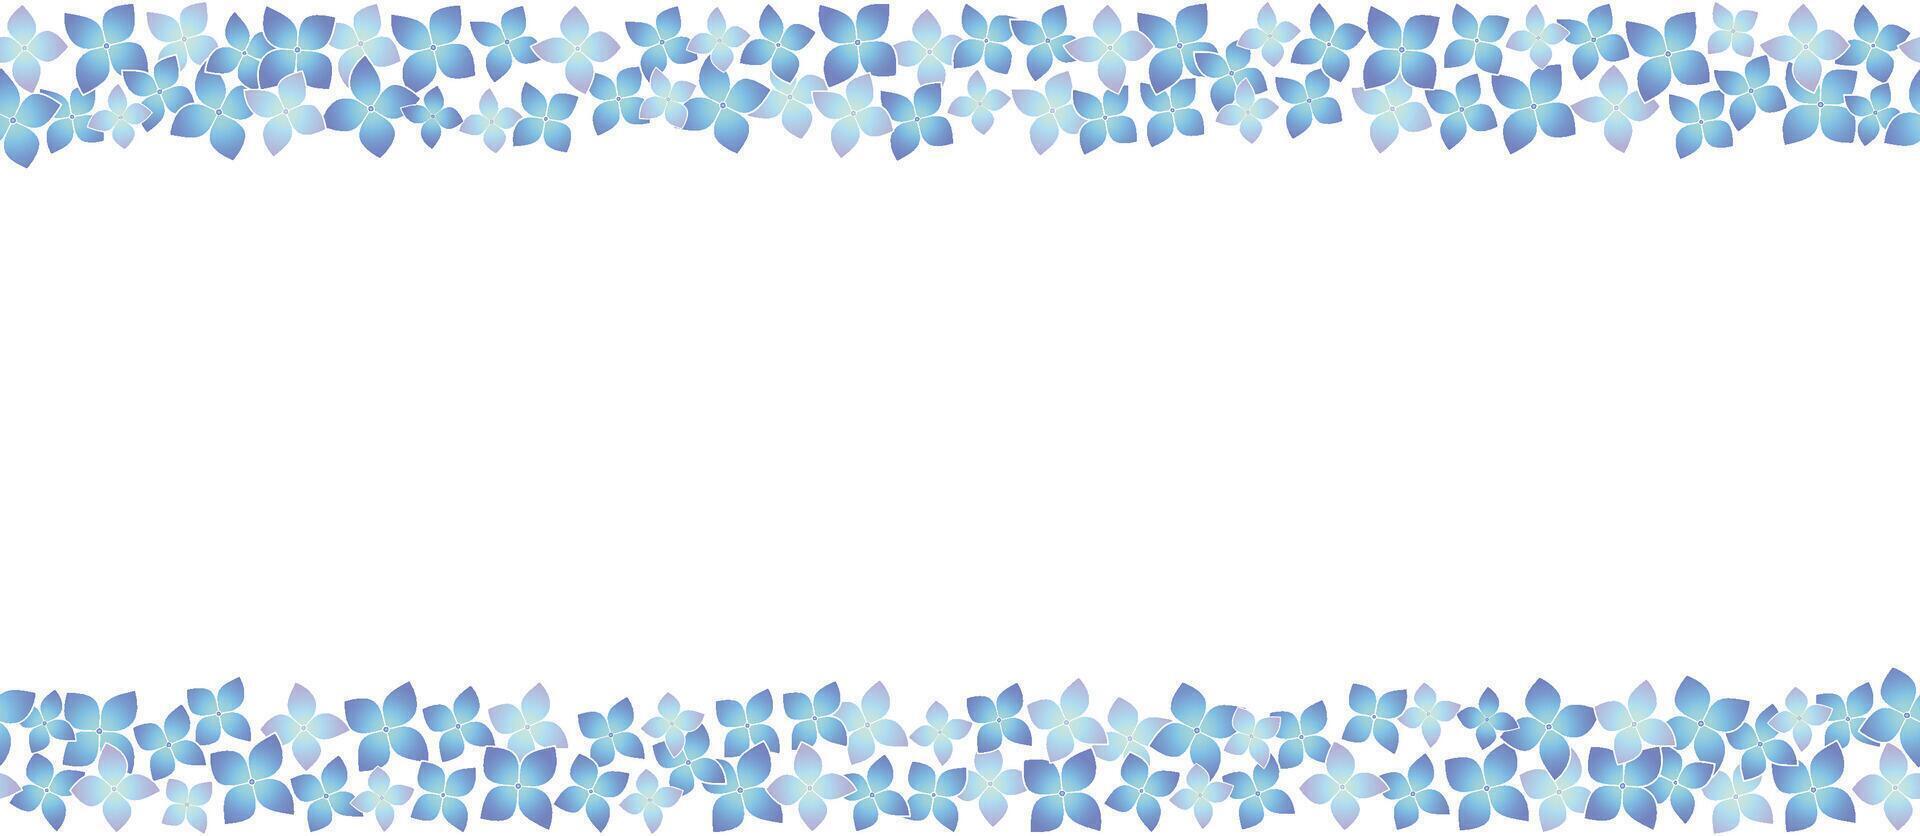 nahtlos Blau Hortensie Rahmen Vektor Illustration isoliert auf ein Weiß Hintergrund. horizontal wiederholbar.